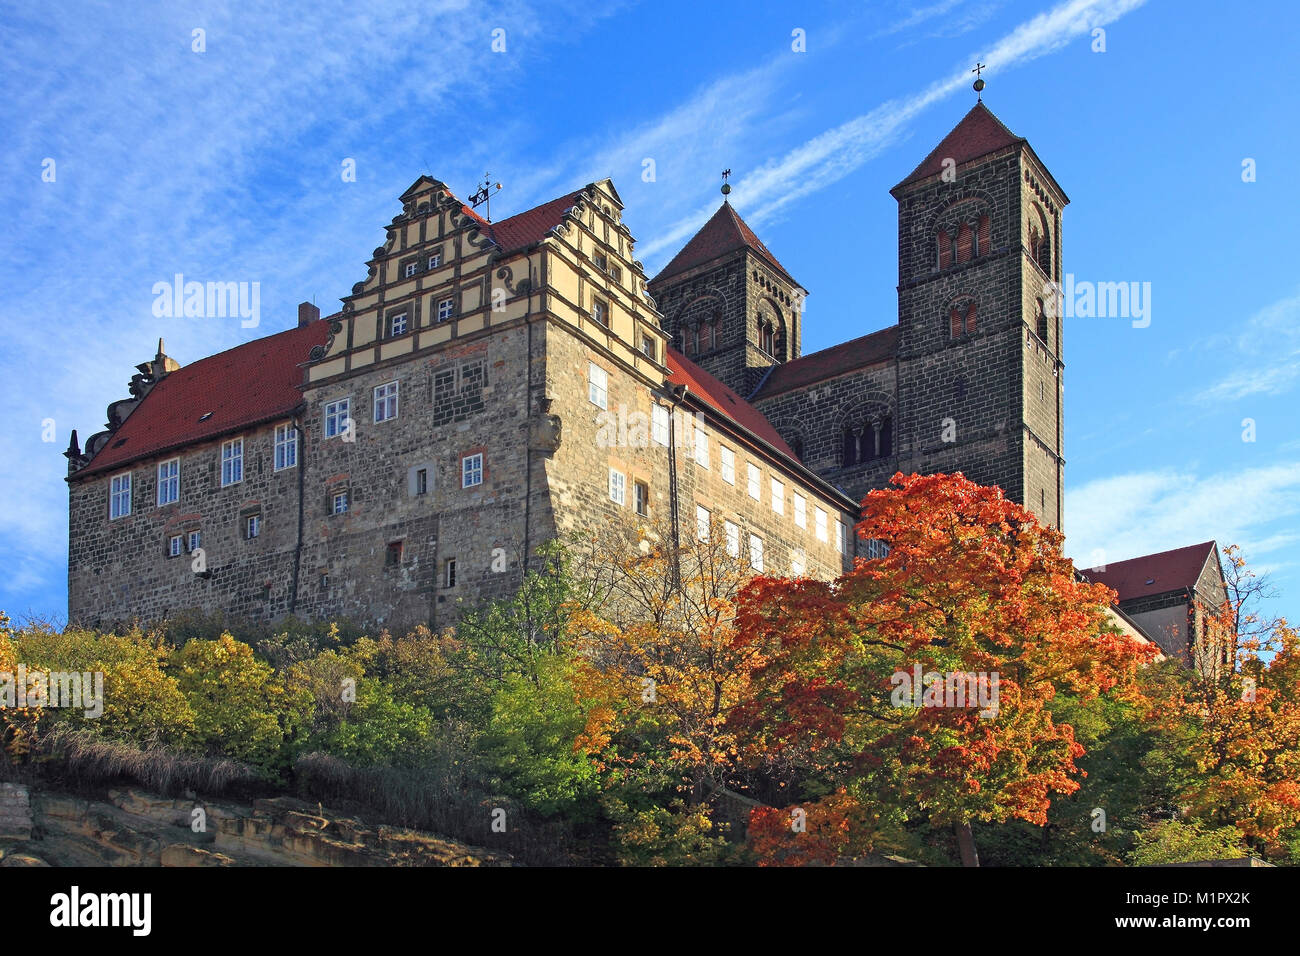 UNESCO World Heritage ville de Quedlinburg, Allemagne,résine, l'Est de montagnes du Harz, de la SAXE-ANHALT, Castle Hill avec le château, l'UNESCO-Welterbestätte Qu Banque D'Images